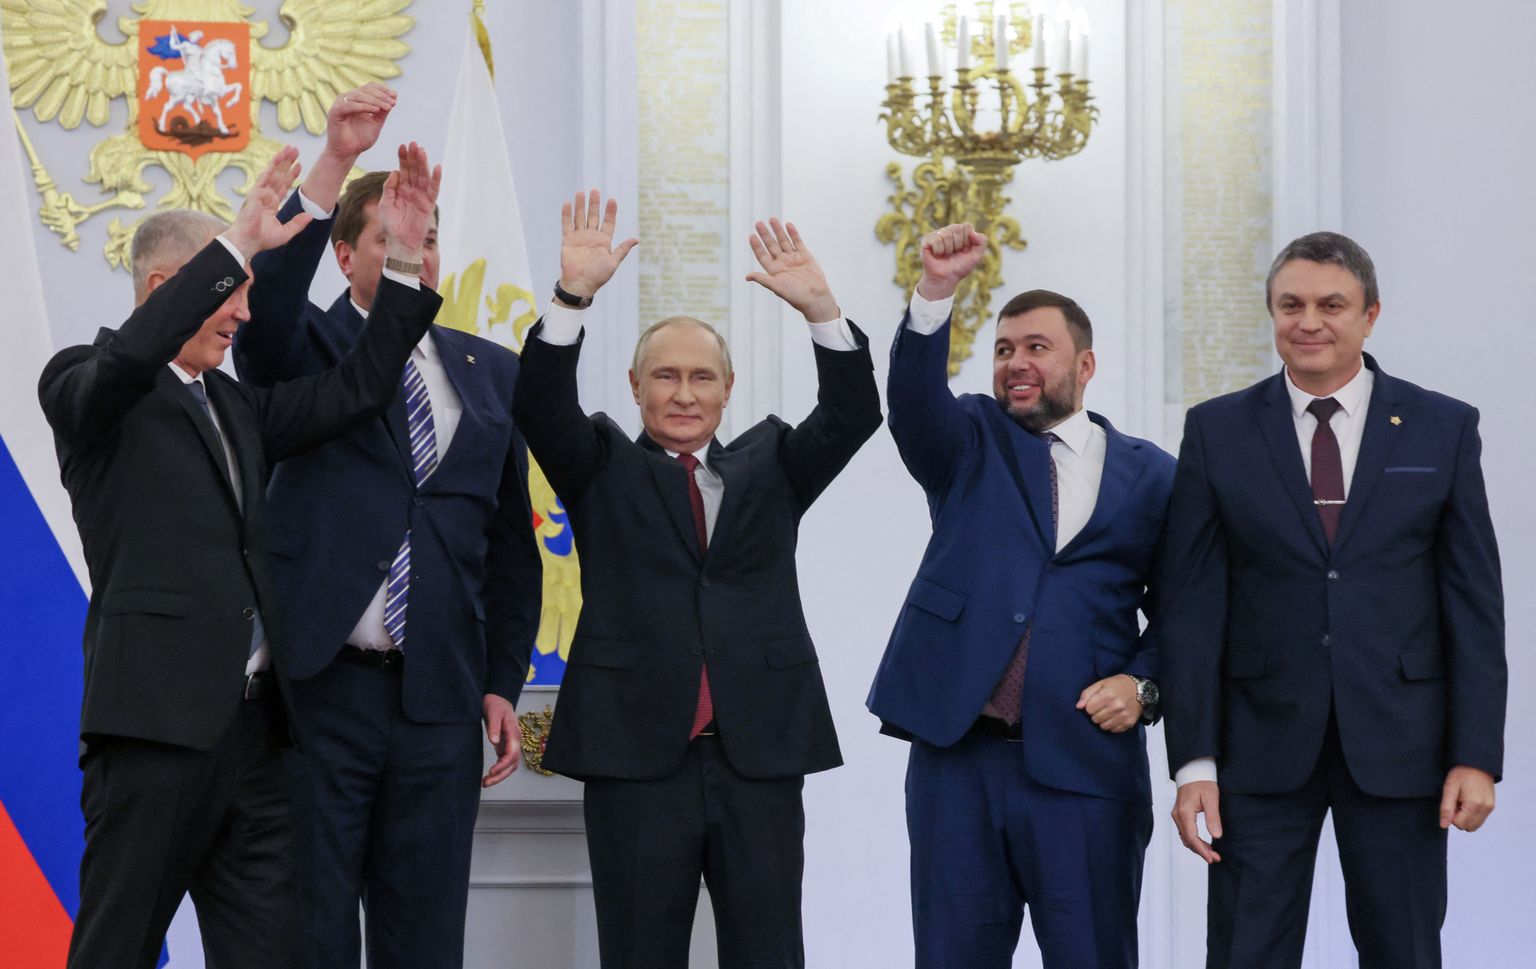 Venemaa riigipea Vladimir Putin koos nelja okupeeritud Ukraina territooriumi nukuvalitsuse juhiga juubeldamas.